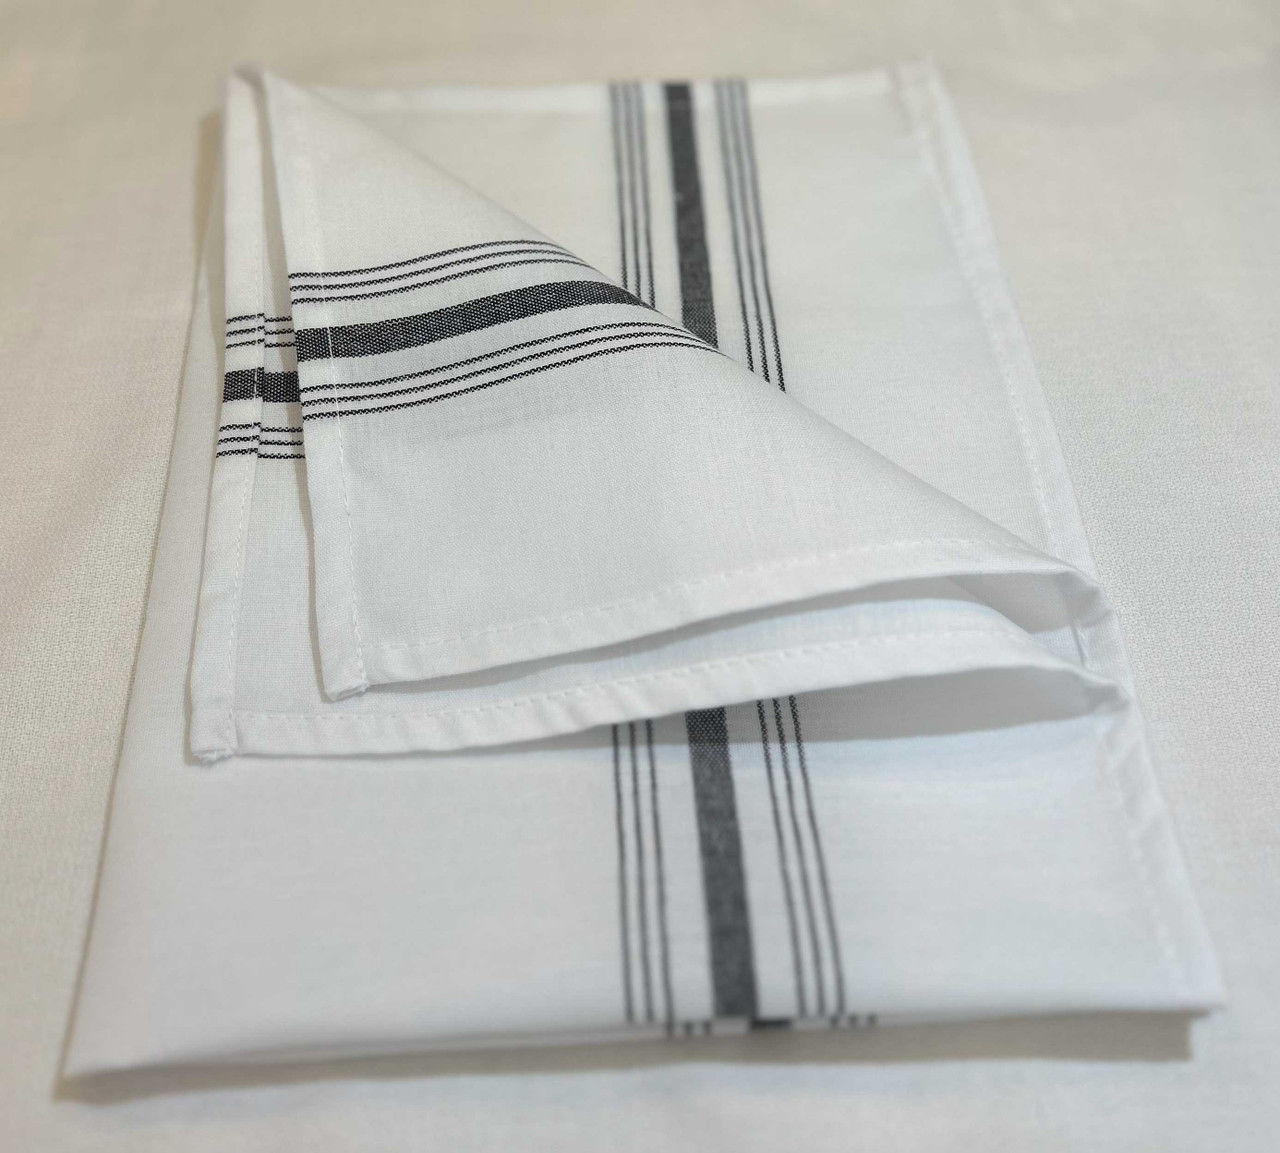 Do you sell bulk cloth napkins?